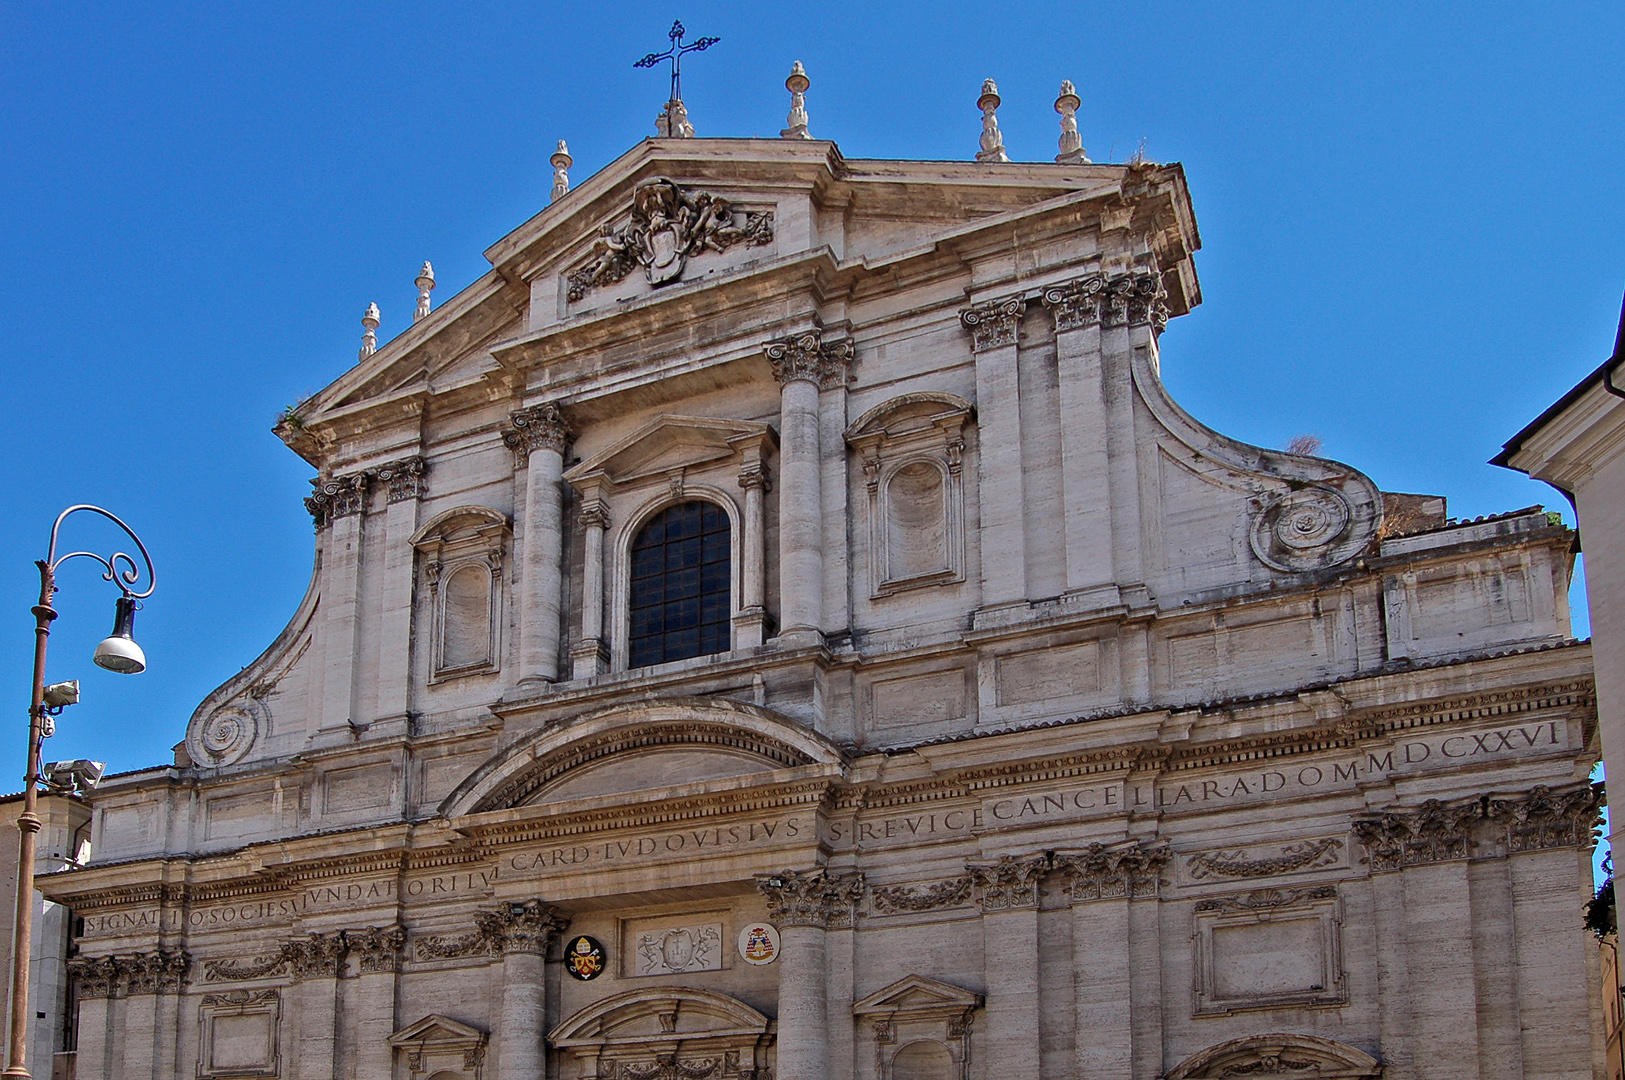 Kerk van Sint-Ignatius. Rome, Italië., Church of Saint Ignatius, Rome, Italy